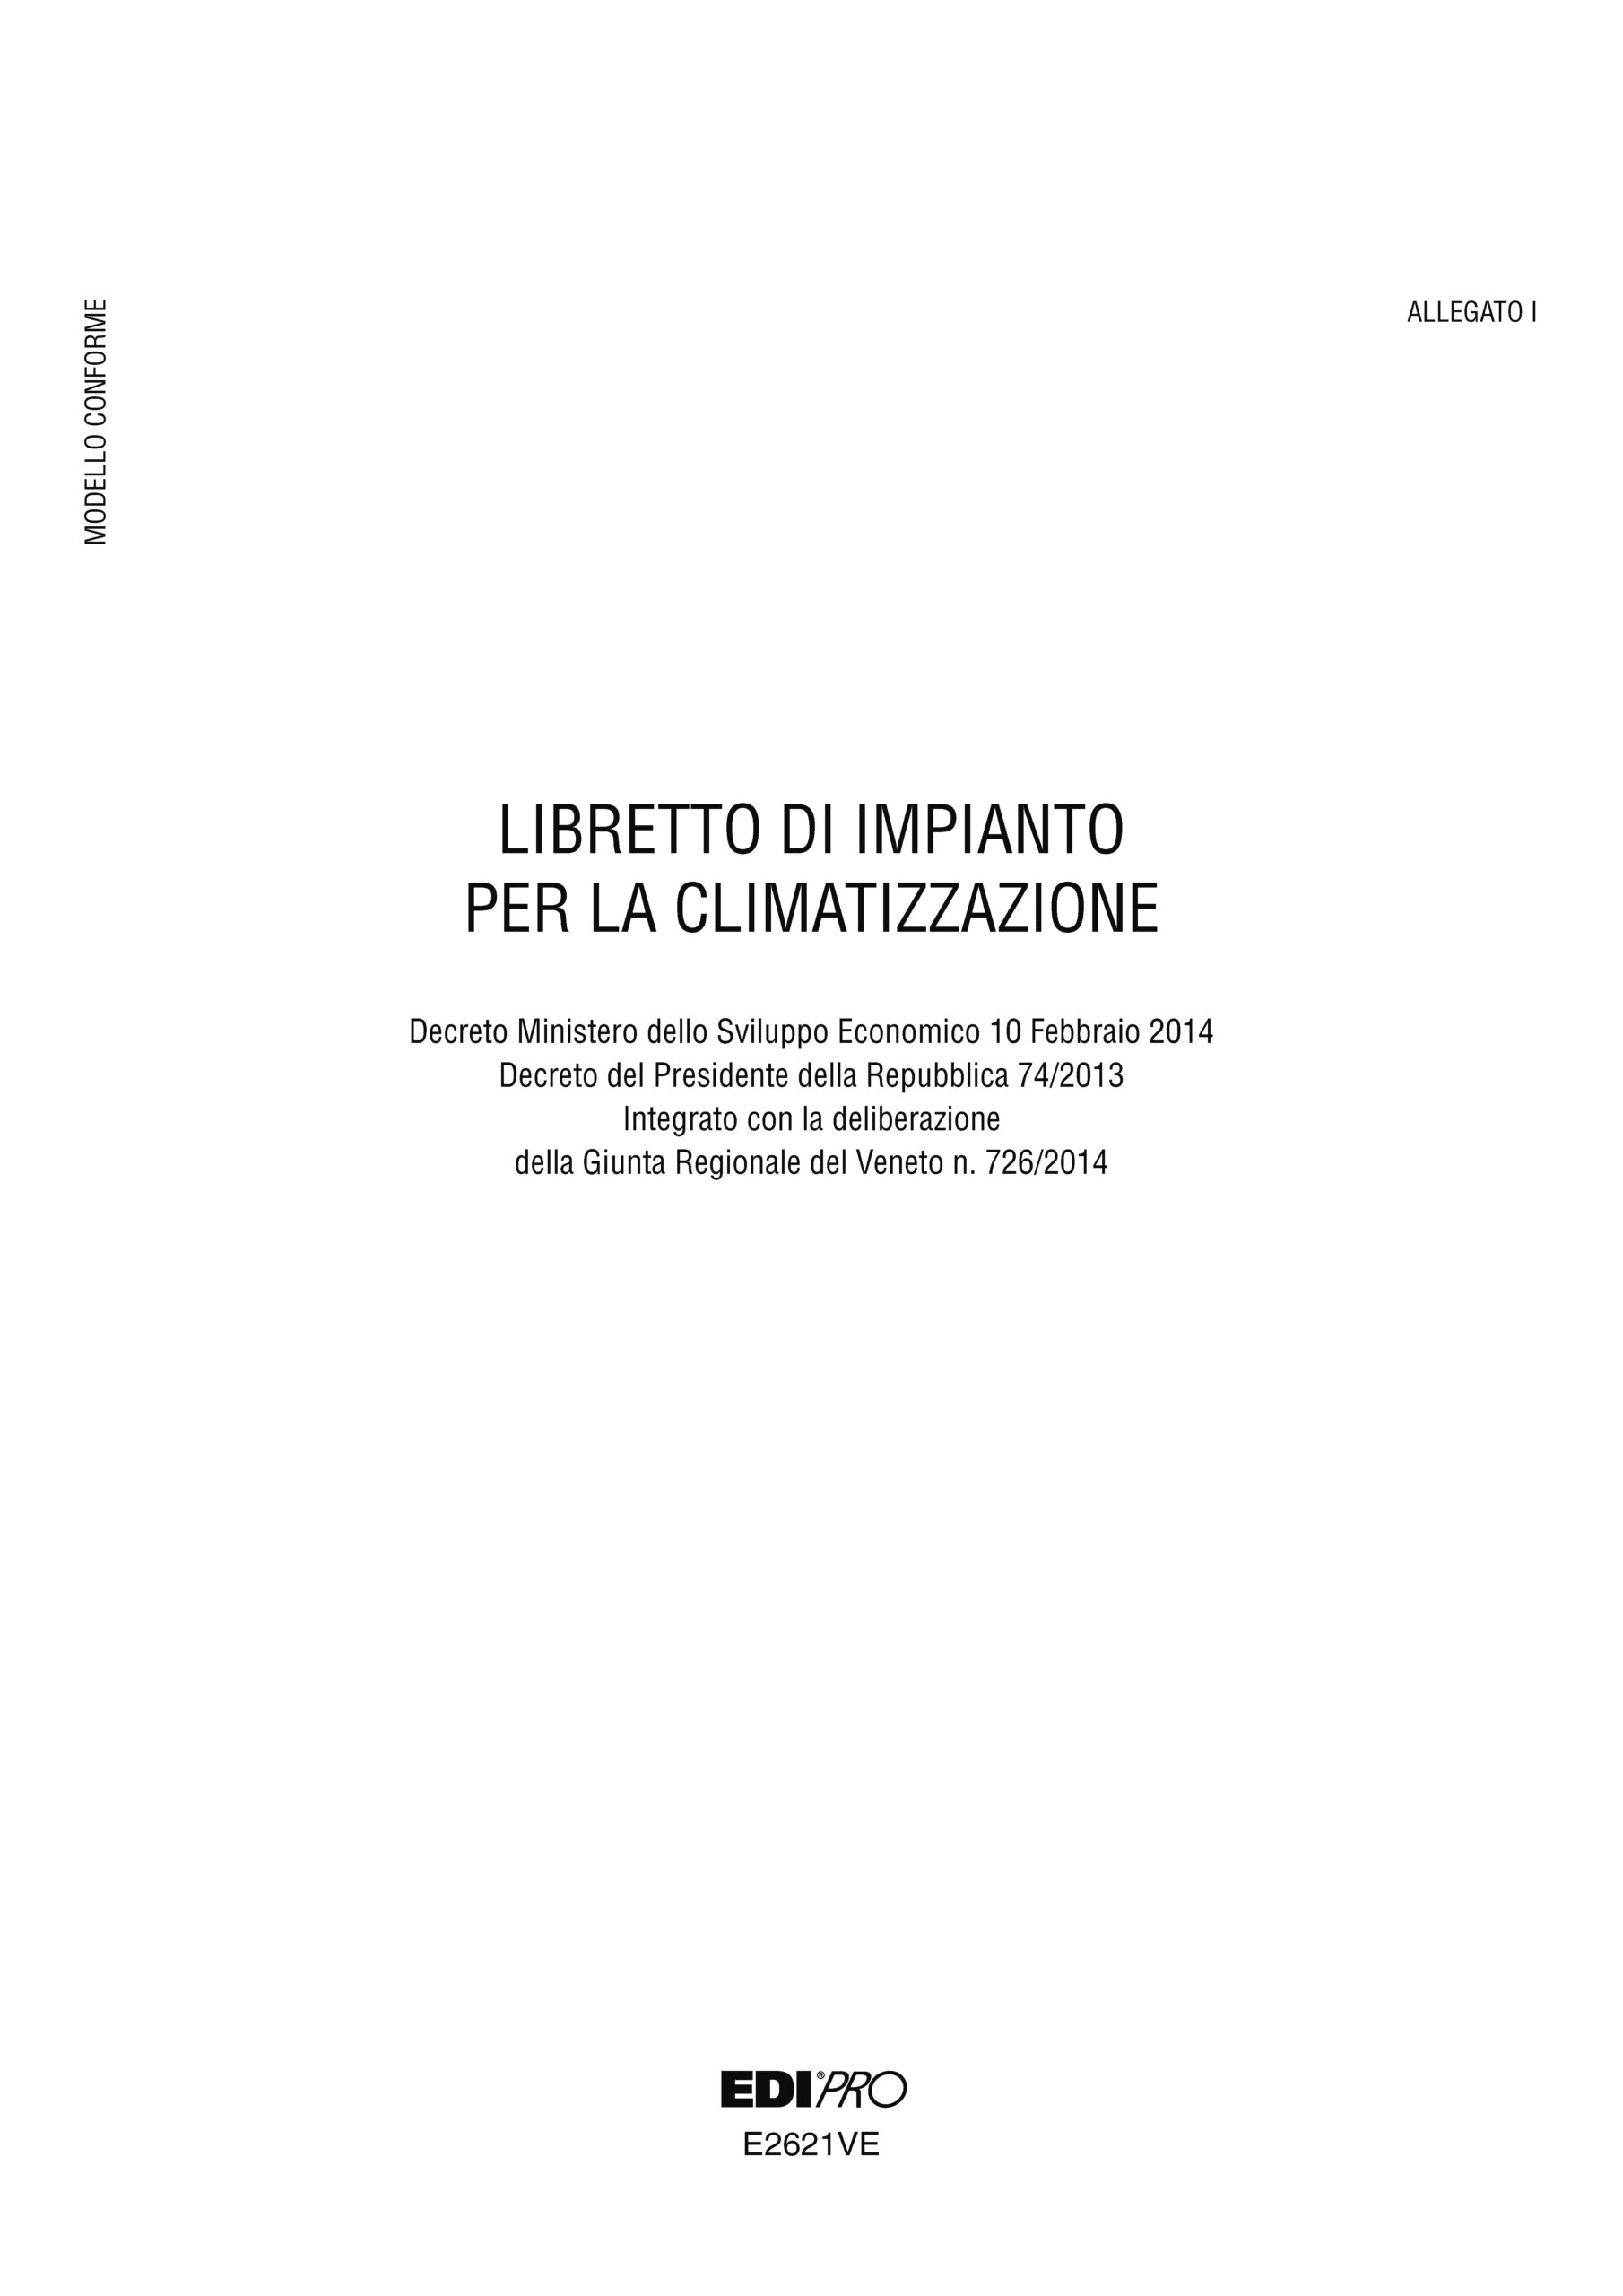 Libretto Impianto Climatizzazione Veneto 297x210mm 48pag E2621ve Edipro E2621ve 8023328262112